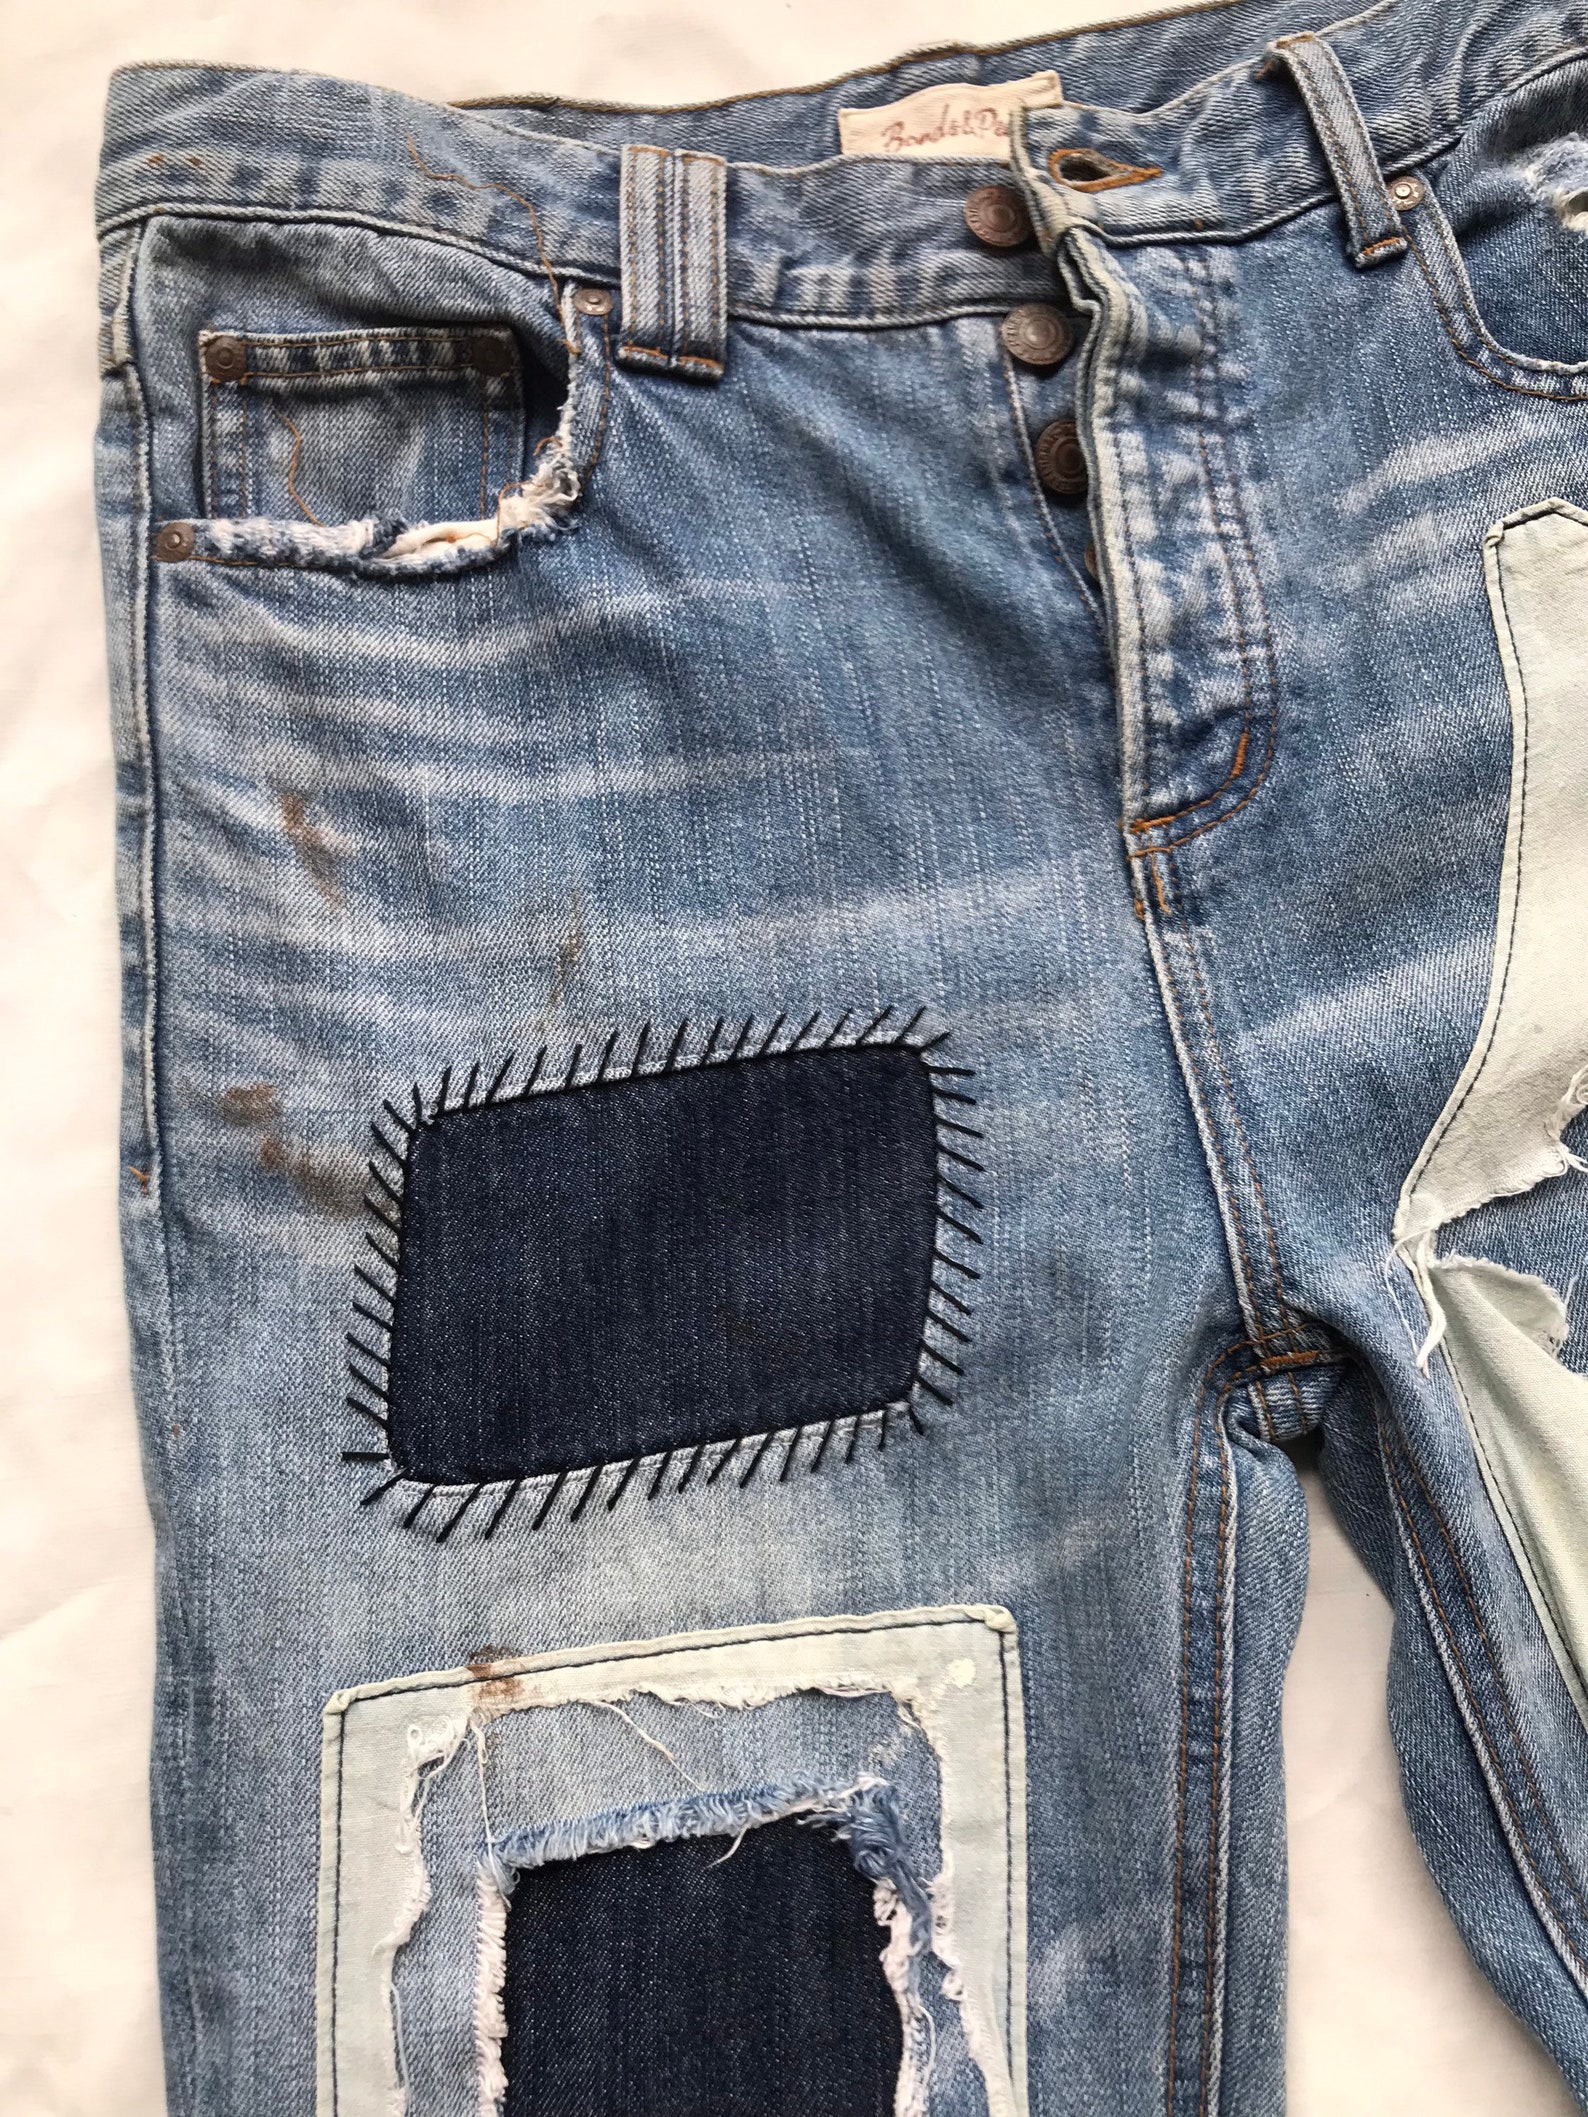 Rare Unique Vintage Patchwork Jeans Reworked Remake Artwork Frayed ...